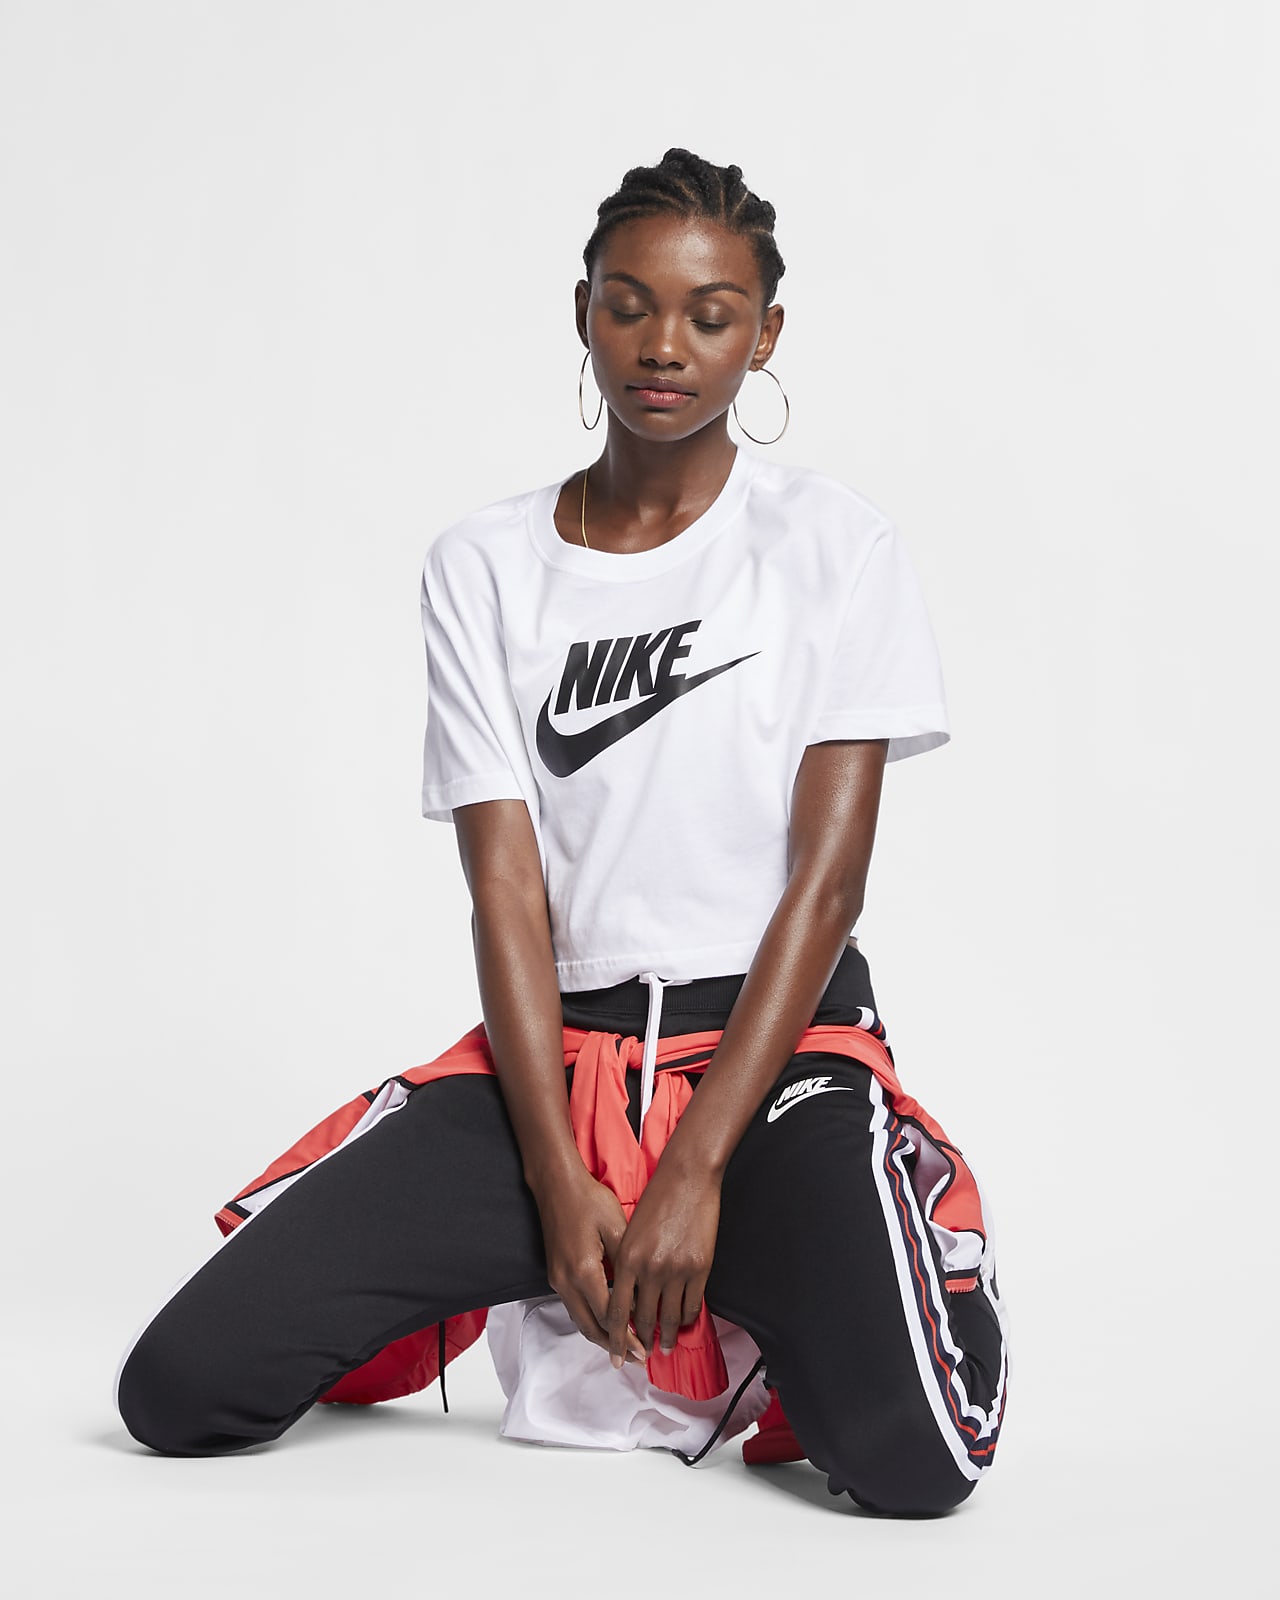 T-shirts pour Femme. Hauts de Sport et Lifestyle pour Femme. Nike BE